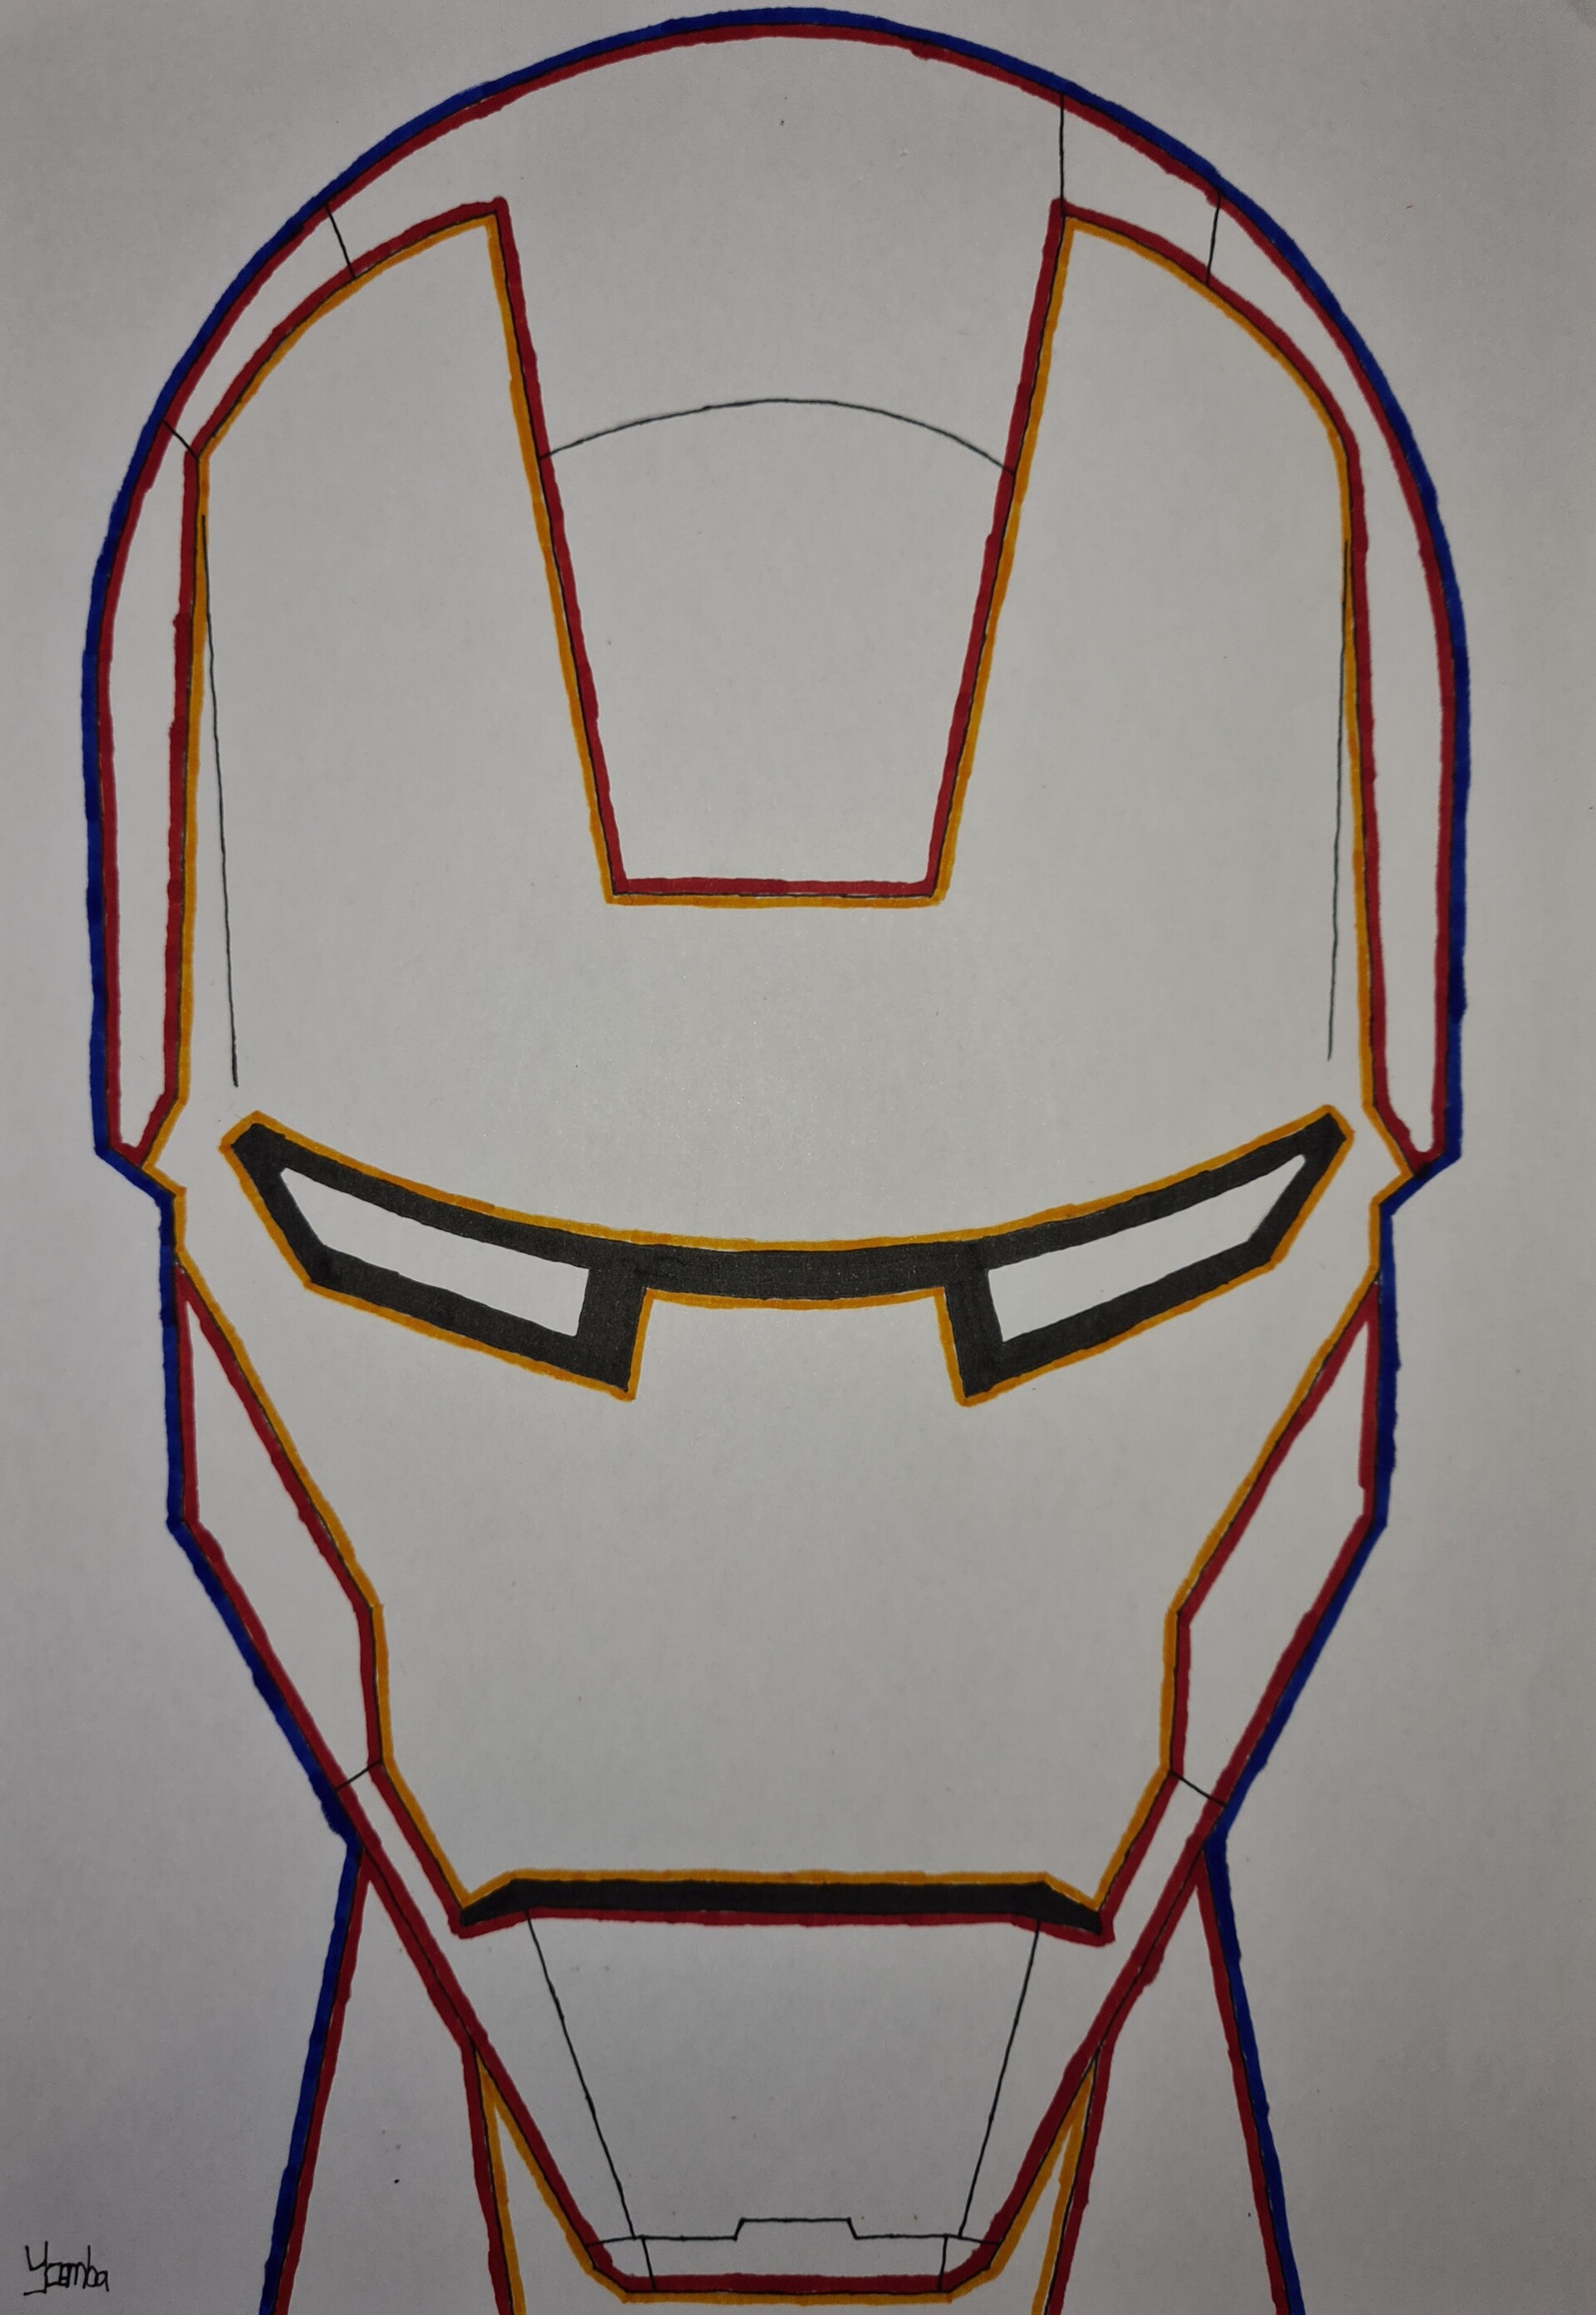 ArtStation - Iron Man: Bạn là fan của Iron Man? Hãy đến với ArtStation để chiêm ngưỡng tác phẩm vẽ Iron Man cực chất lượng. Họ đã đưa Tony Stark được yêu thích của chúng ta lên một tầm cao mới với những chi tiết tuyệt vời và kỹ năng đỉnh cao của họ. Chắc chắn bạn sẽ không thể rời mắt khỏi những tác phẩm đẹp như tranh vẽ này.